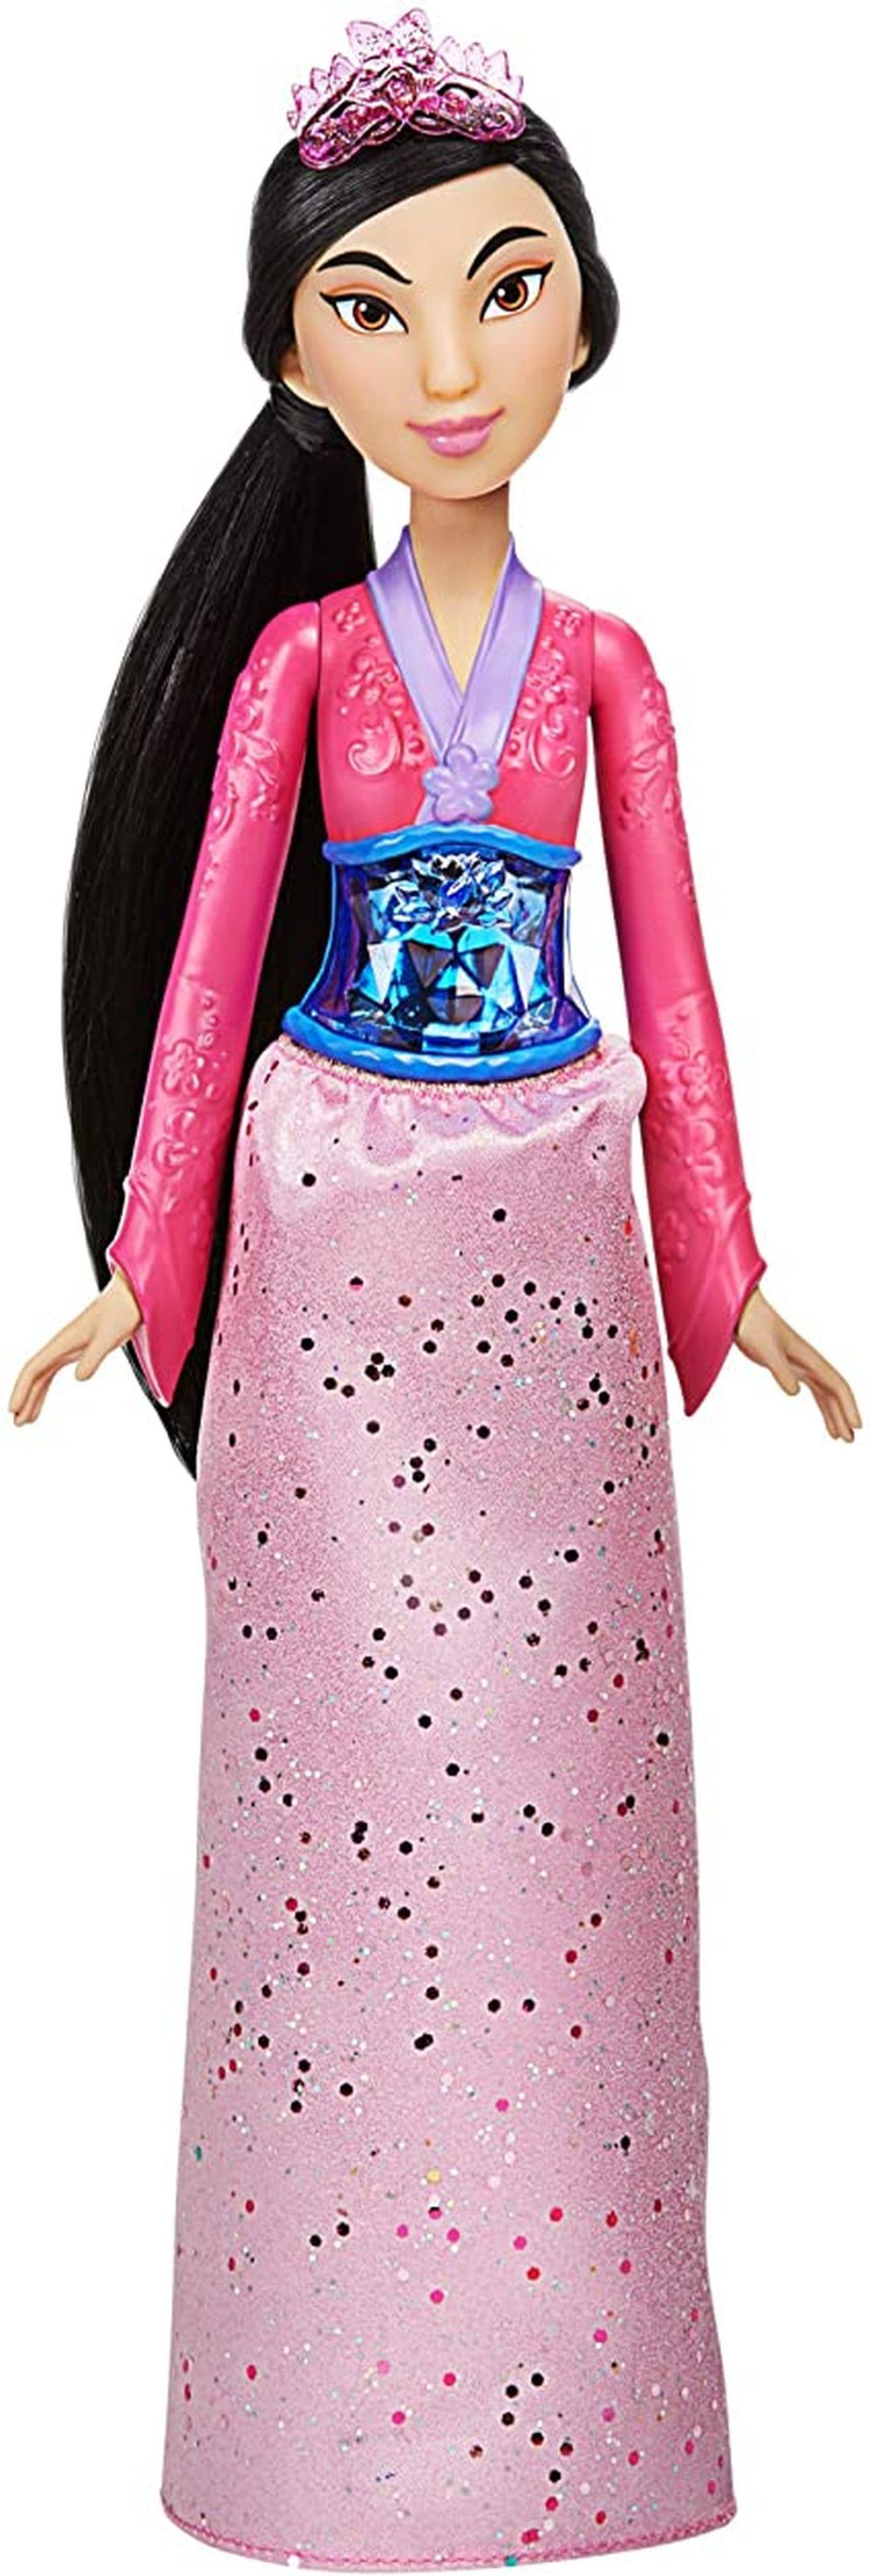 HASBRO Mulan Royal Shimmer Disney Princess Doll - .